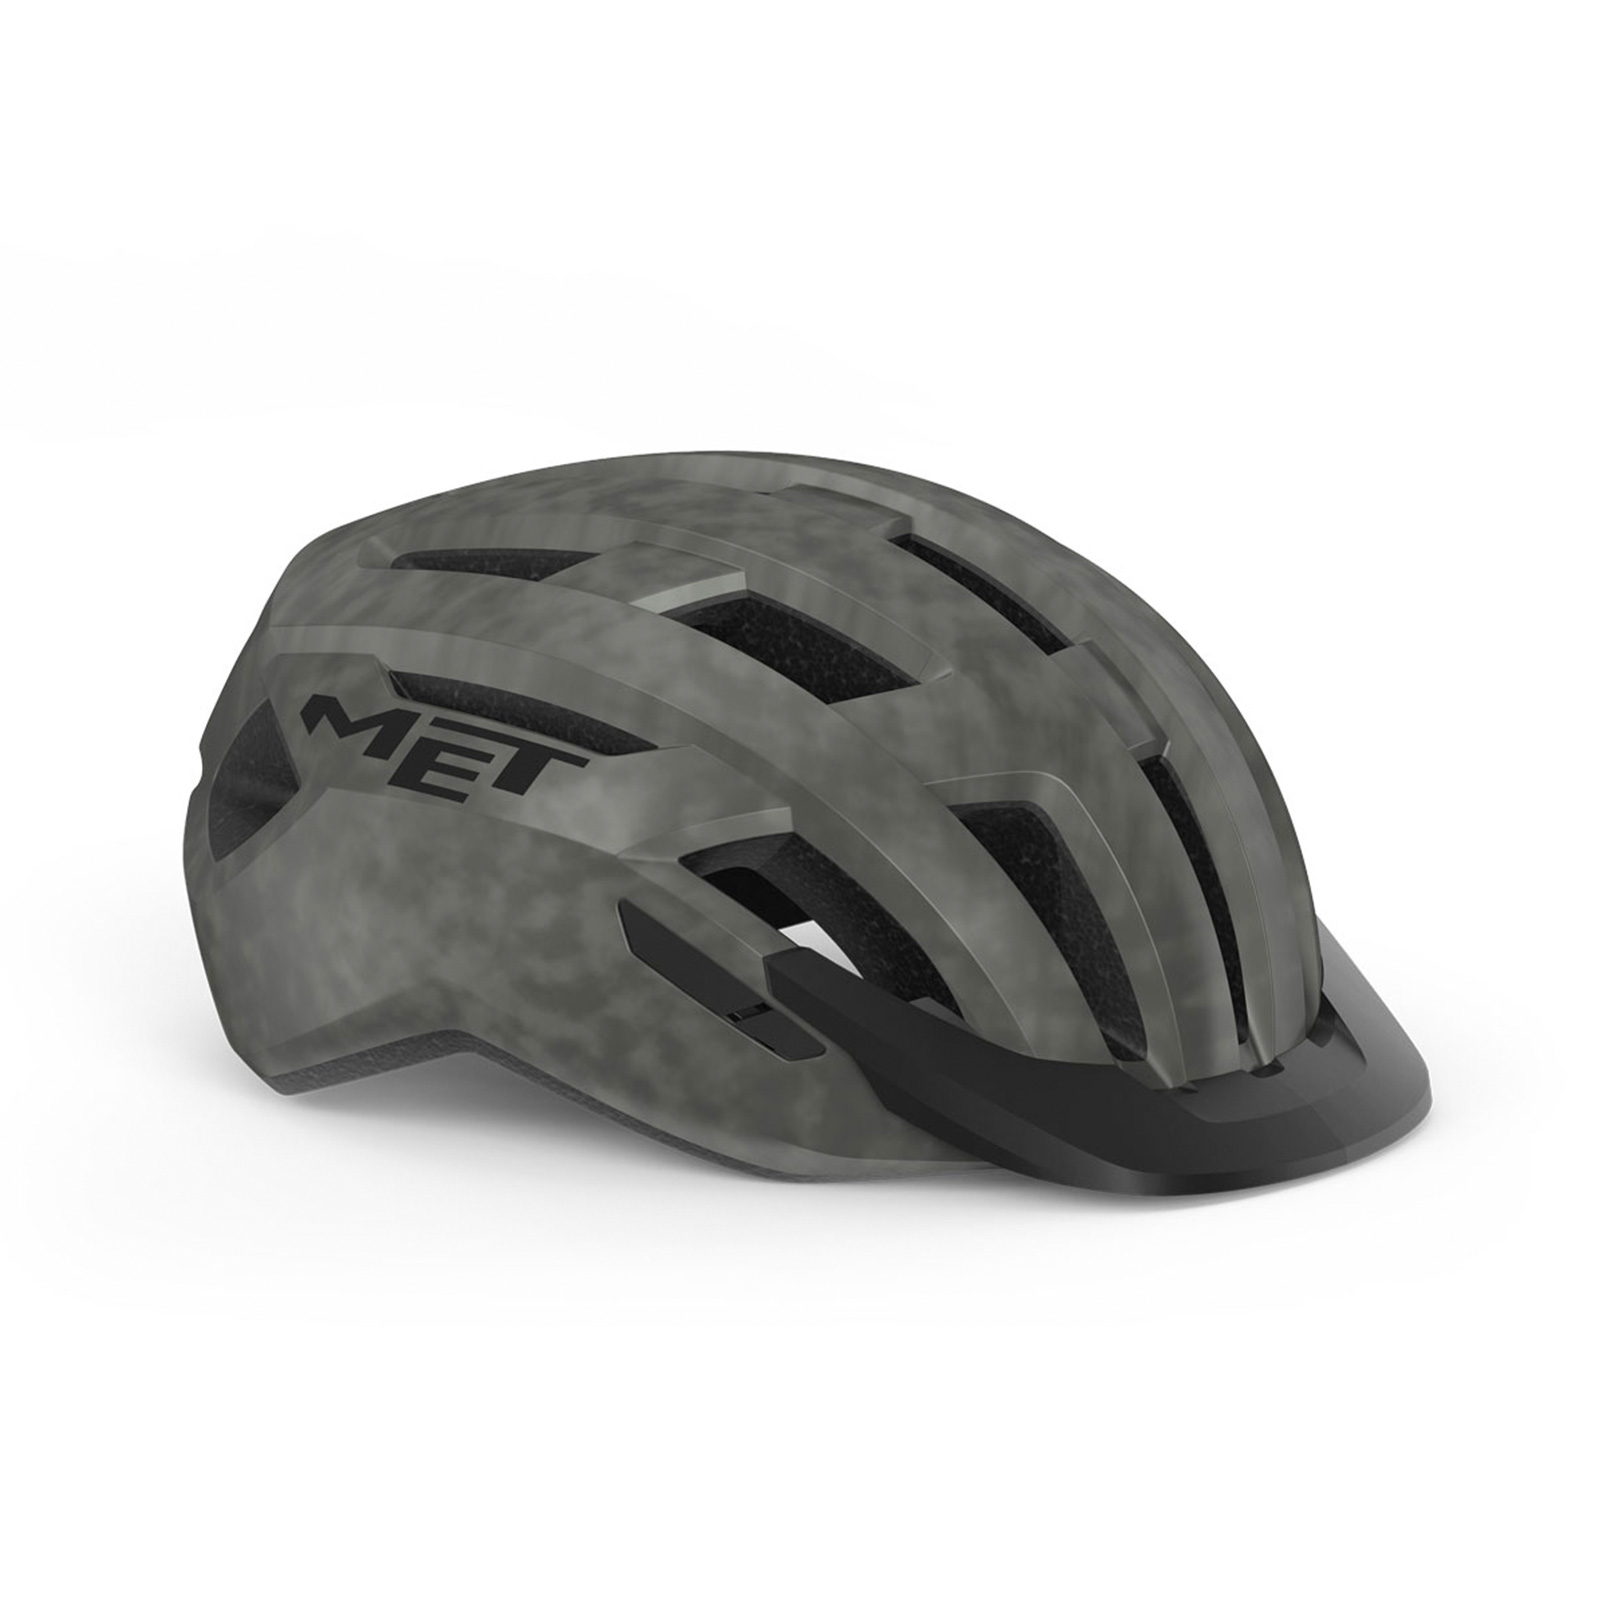 met-allroad-mips-cycling-helmet-M143GR2